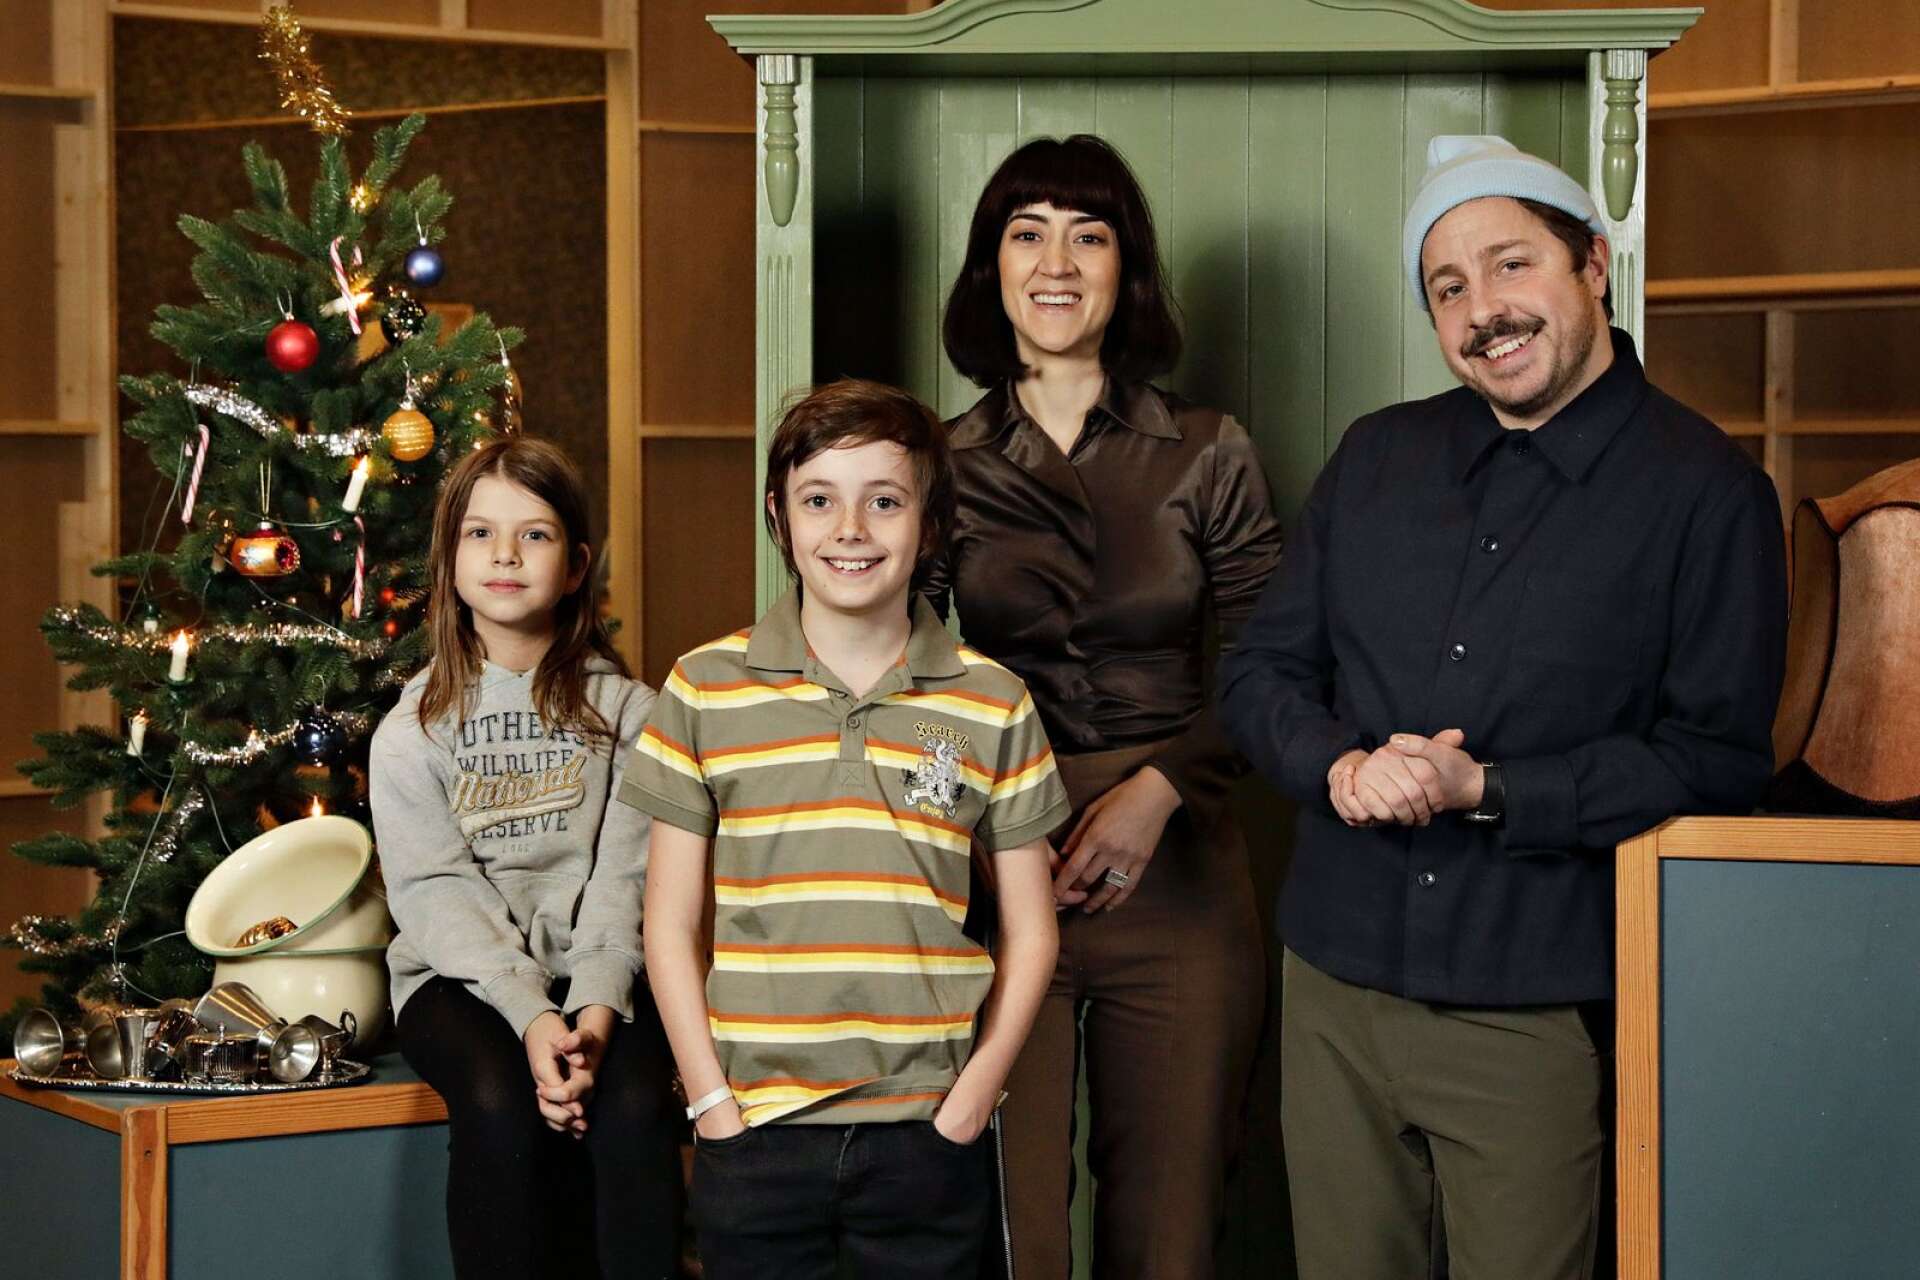 Familjen Knyckertz spelas av David Sundin (pappa Bove), Gizem Erdogan (mamma Fia) och barnen Ture och Kriminellen spelas av Axel Adelöw och Paloma Grandin